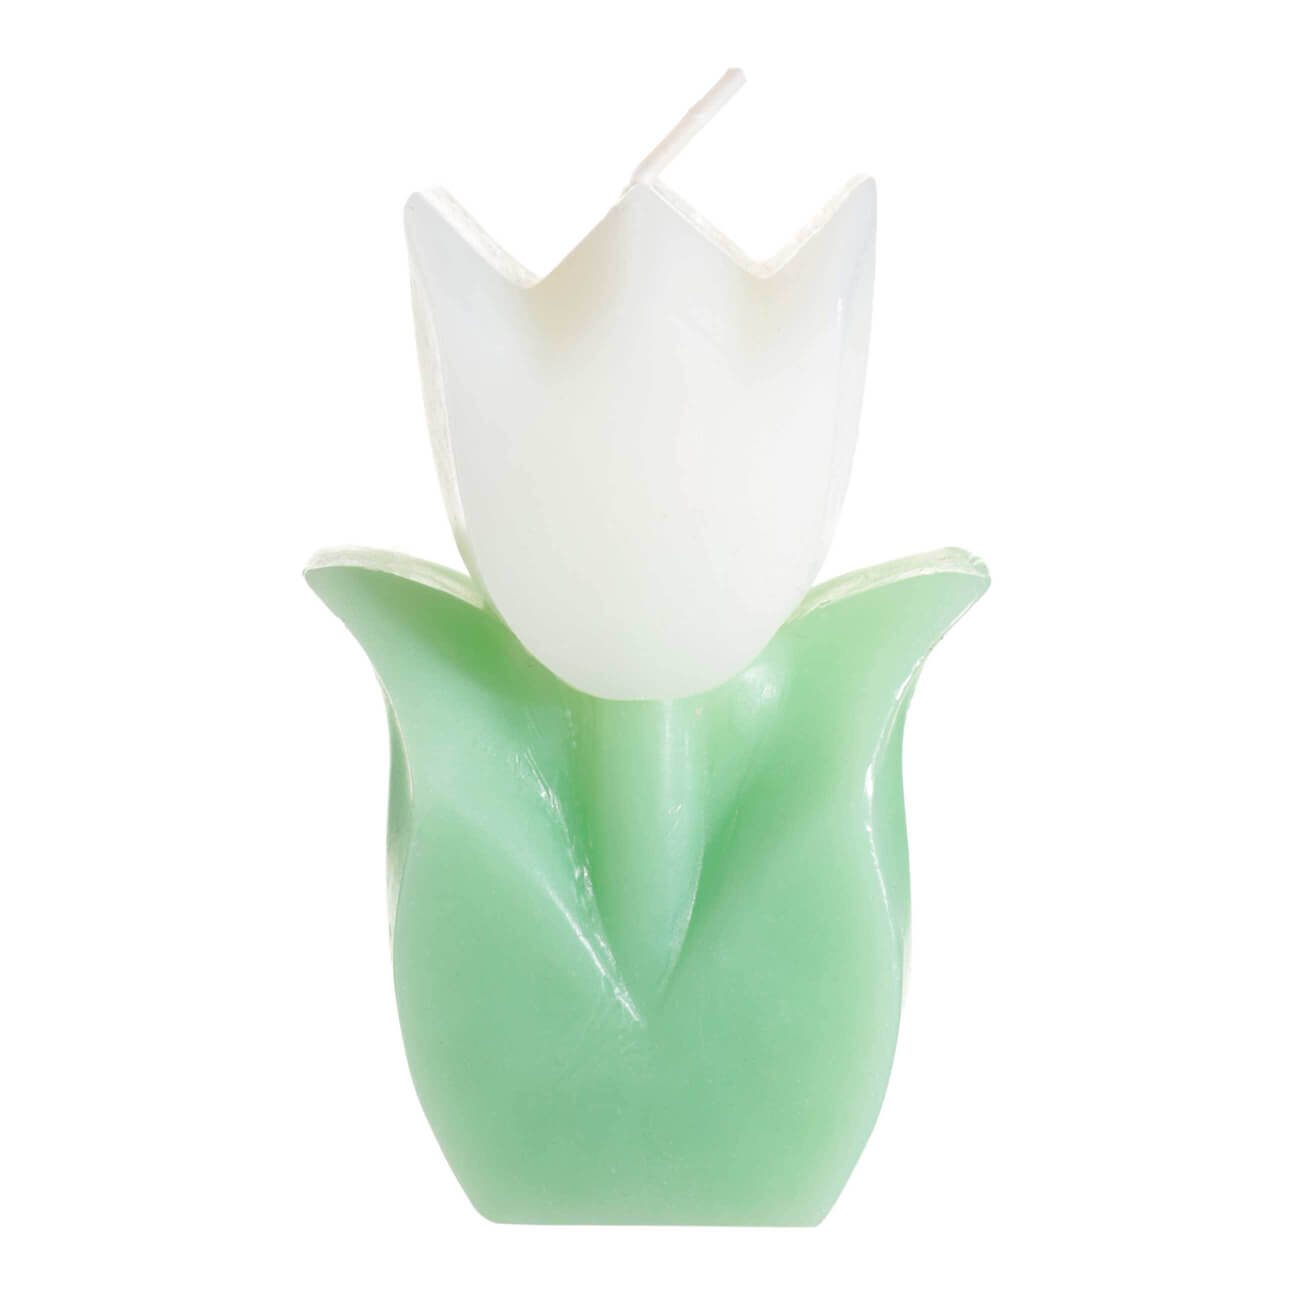 Свеча, 10 см, бело-зеленая, Тюльпан, Tulip garden свеча из вощины медовая 4 см